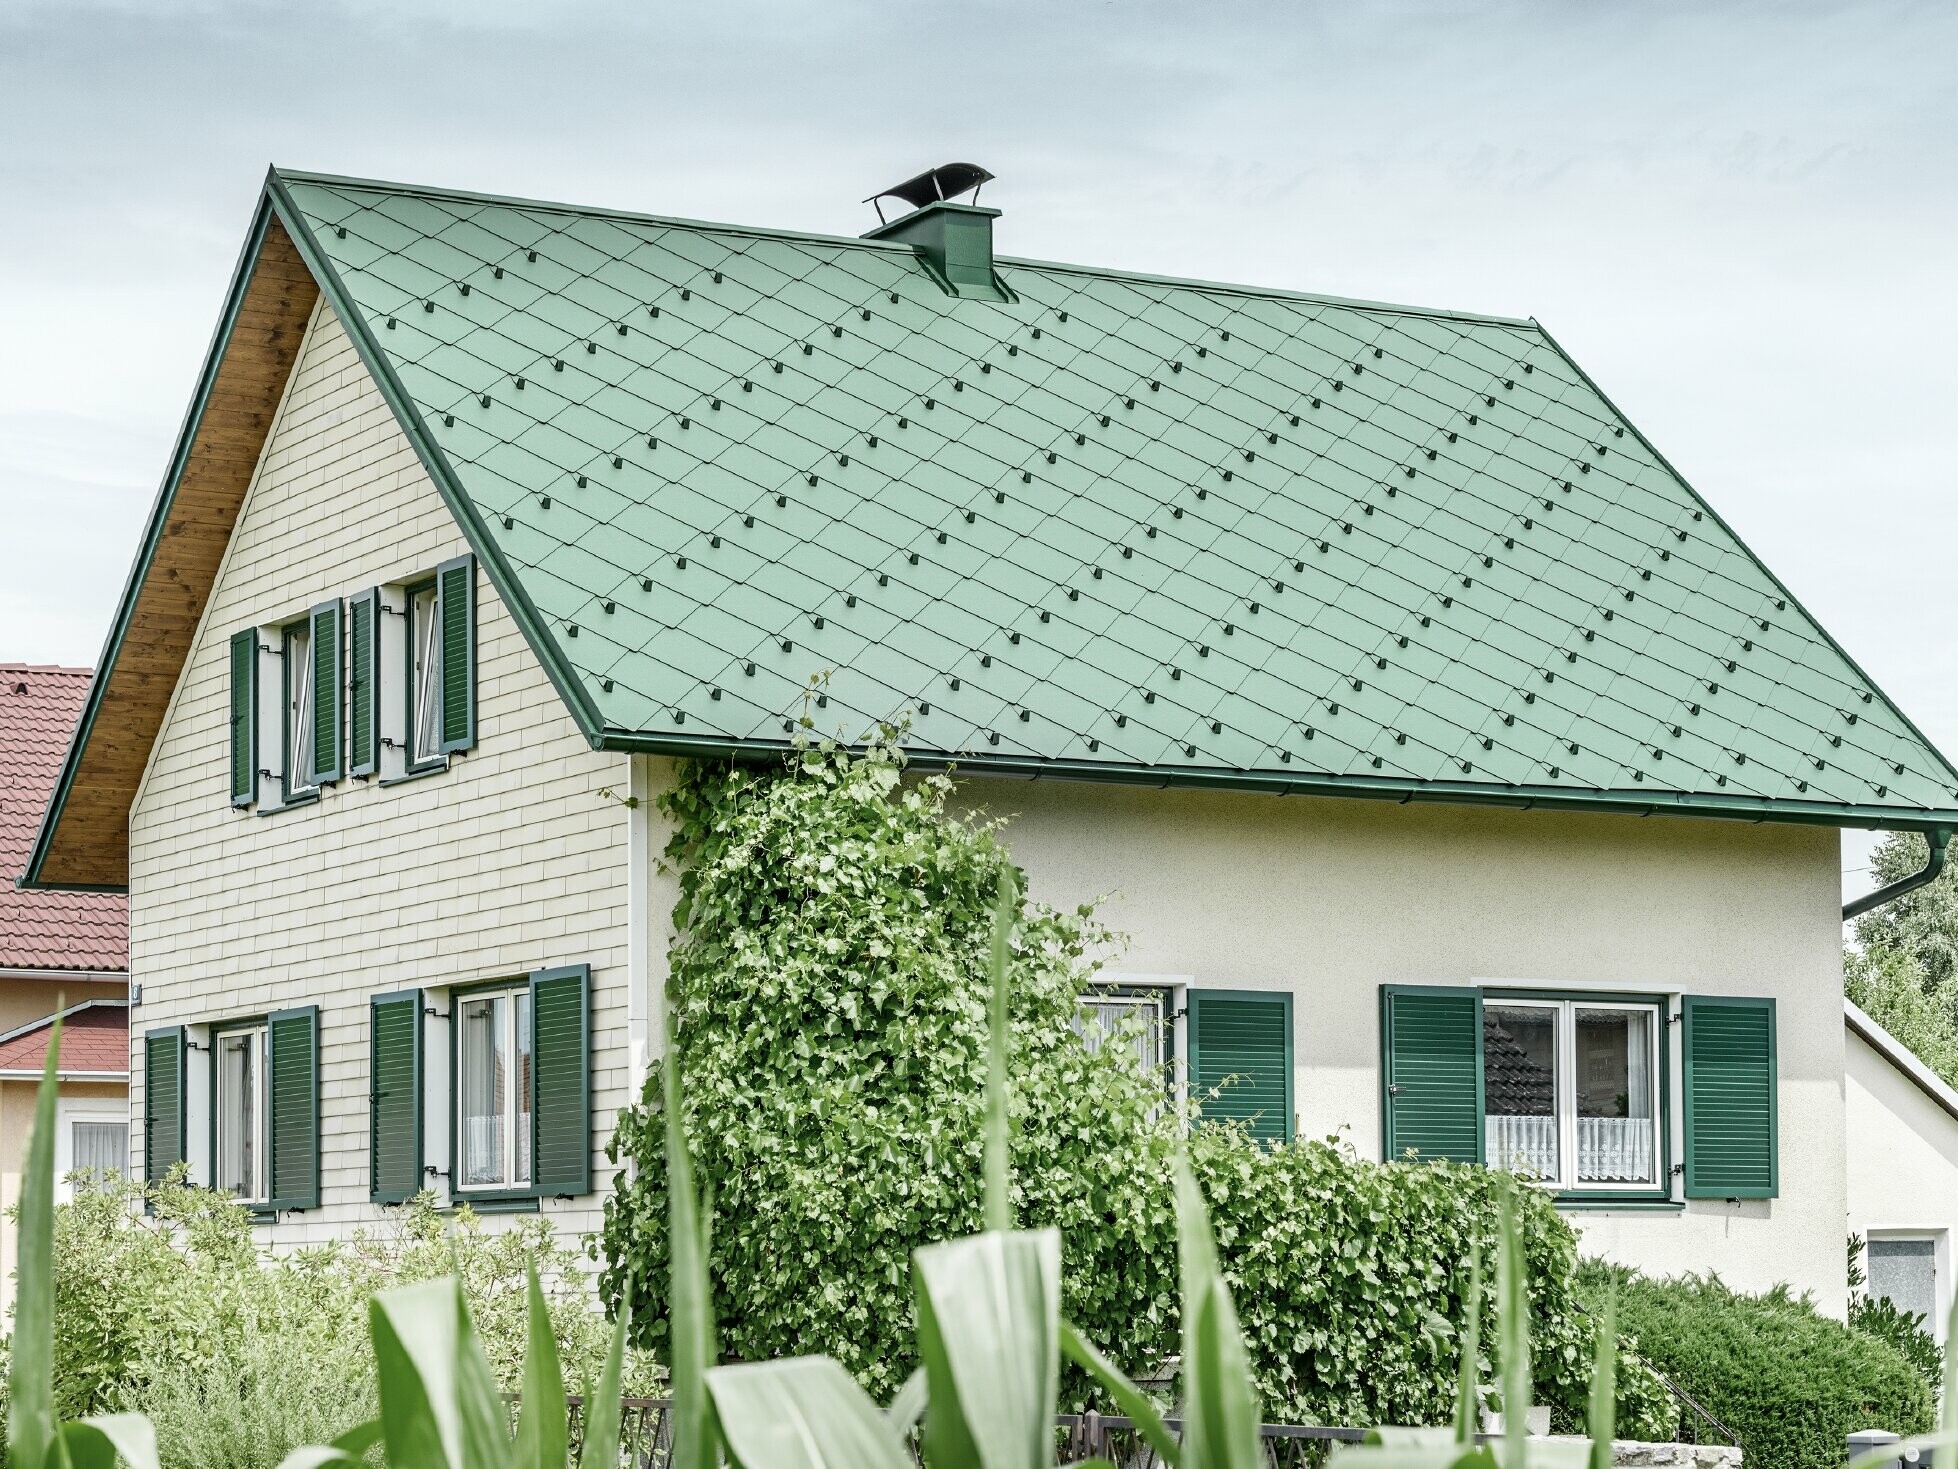 Casa unifamiliare classica con tetto a due falde con copertura in alluminio di colore verde muschio e  persiane verdi